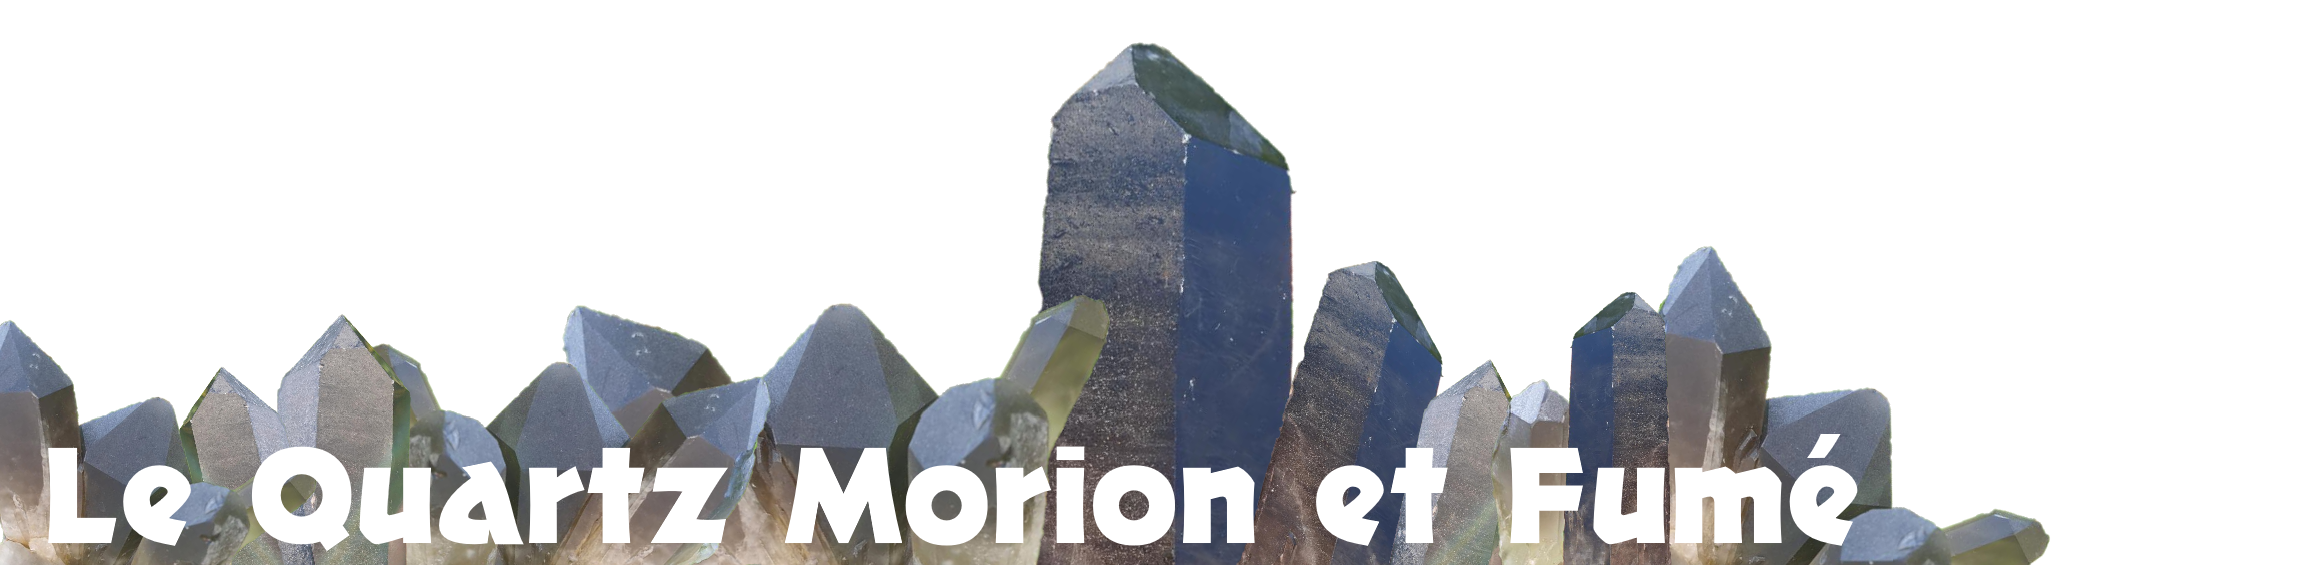 quartz-morion-fumee-description-mineraux-pierre-naturelle-precieuse-explication-couleur-noire